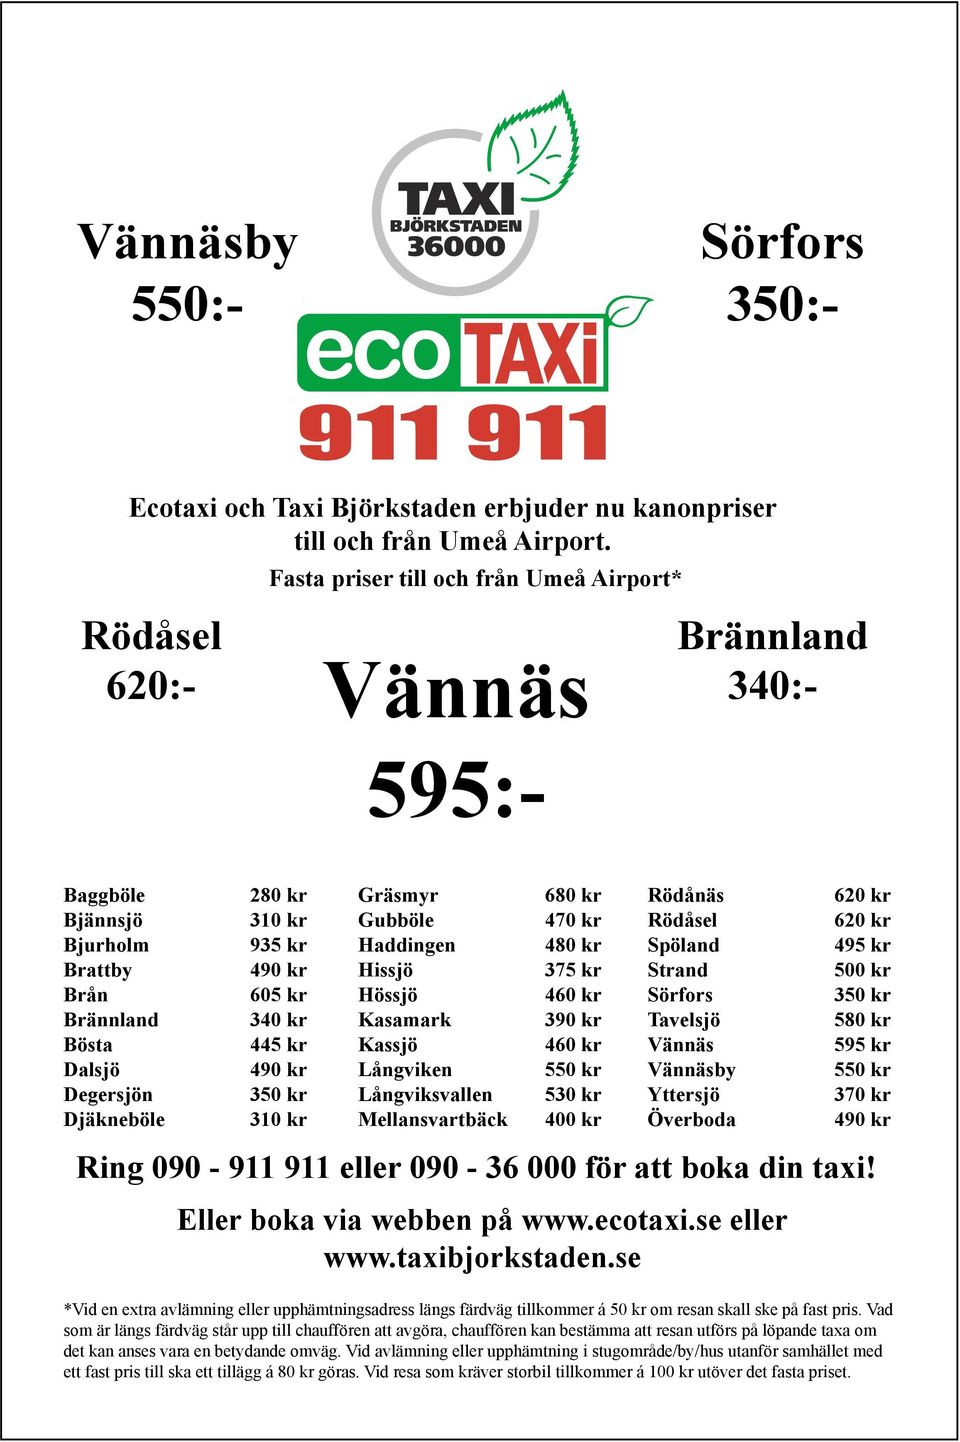 445 kr jörkstaden Dalsjö Eco Taxi - 490 VMF56 kr Långviken - 48 x 50 mm.